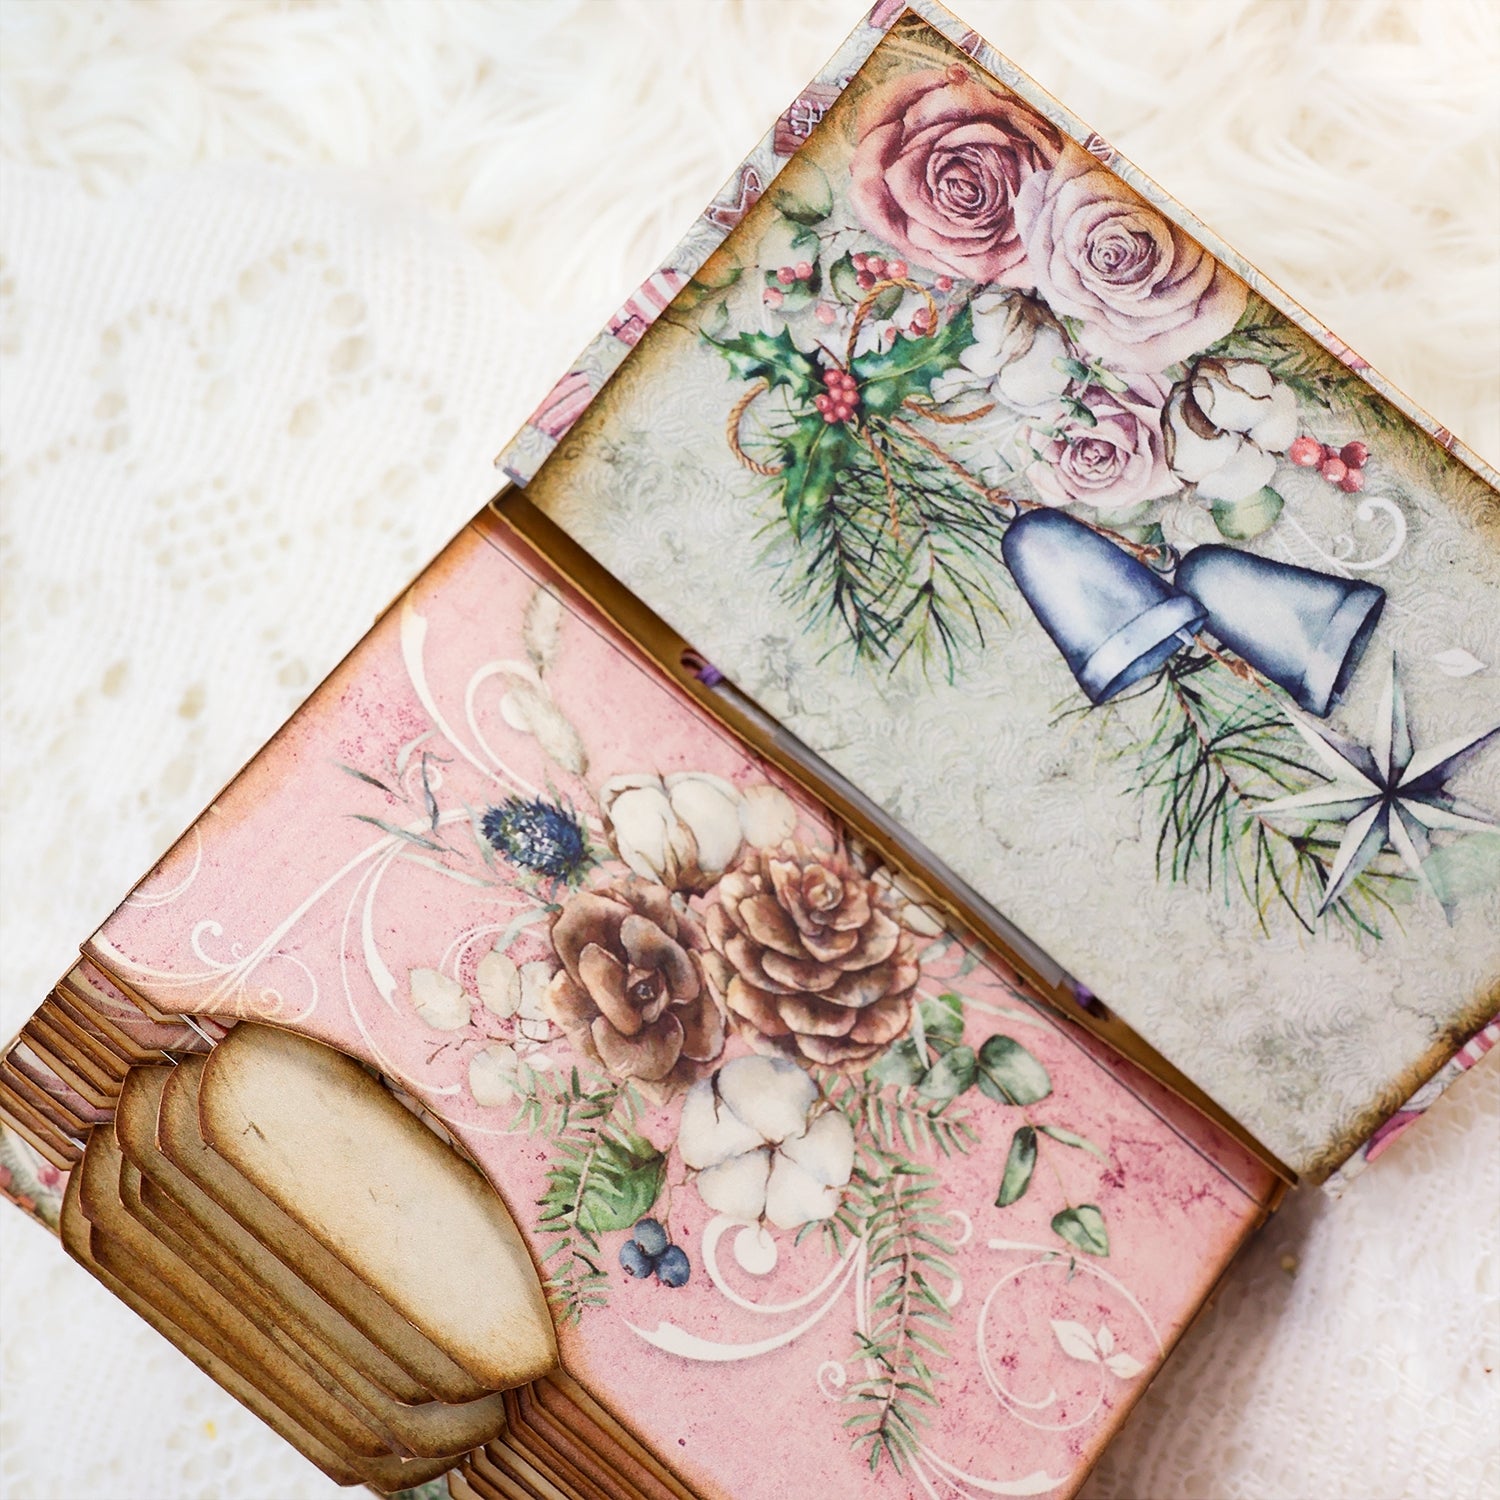 Pink Santa Mini Photo & Notes Album Craft Kit - DIY Gift 6